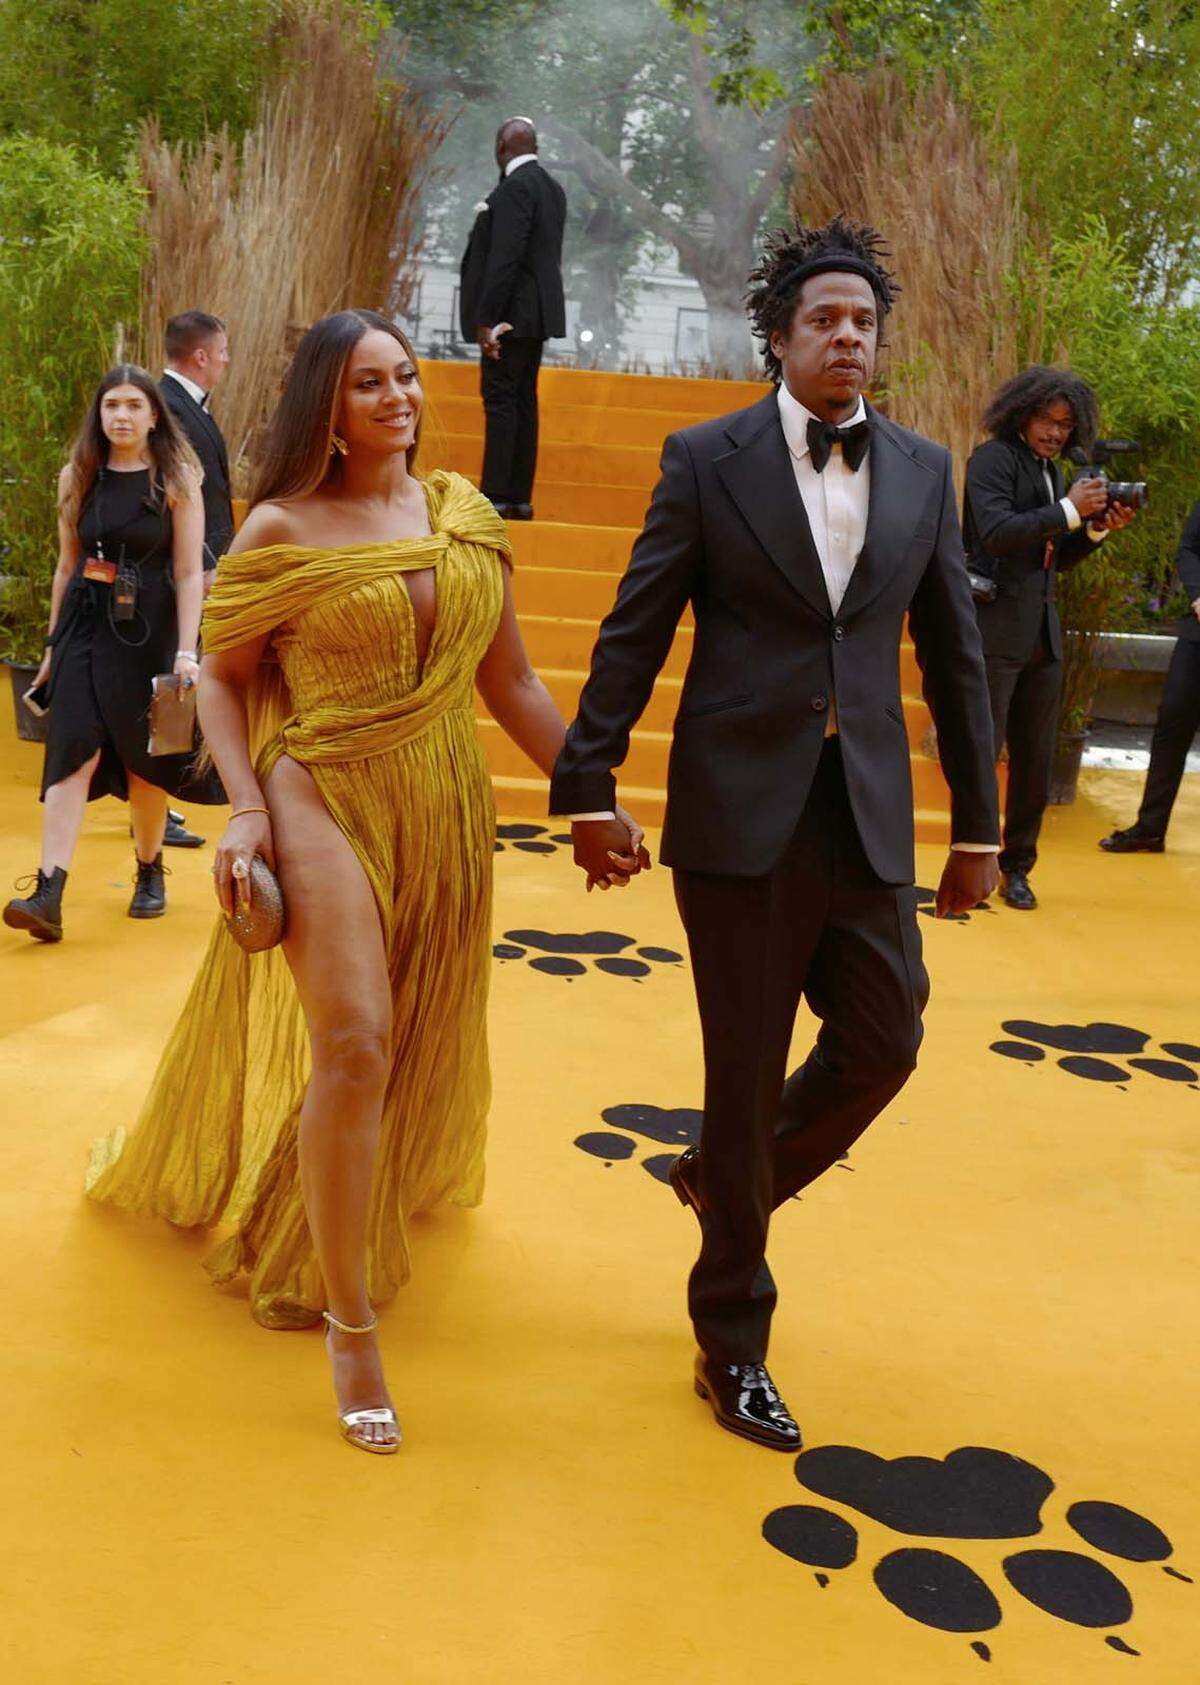 Beyoncé Knowles-Carter kam zusammen mit ihrem Mann Jay-Z zur London-Premiere von "Der König der Löwen". Beyoncé streute ihrem Filmcharakter Nala in einem atemberaubenden gelben Kleid des vietnamesischen Designers Nguyen Cong Tri Rosen. Hierzulande feiert die computeranimierte Neuverfilmung des Zeichentrickfilms "Der König der Löwen" aus dem Jahr 1994 am 17. Juli Kino-Premiere. Die 37-jährige Popdiva brachte bereits am 10. Juli ihre Single "Spirit" heraus, den offiziellen Titelsong zu dem neuen Disney-Film.